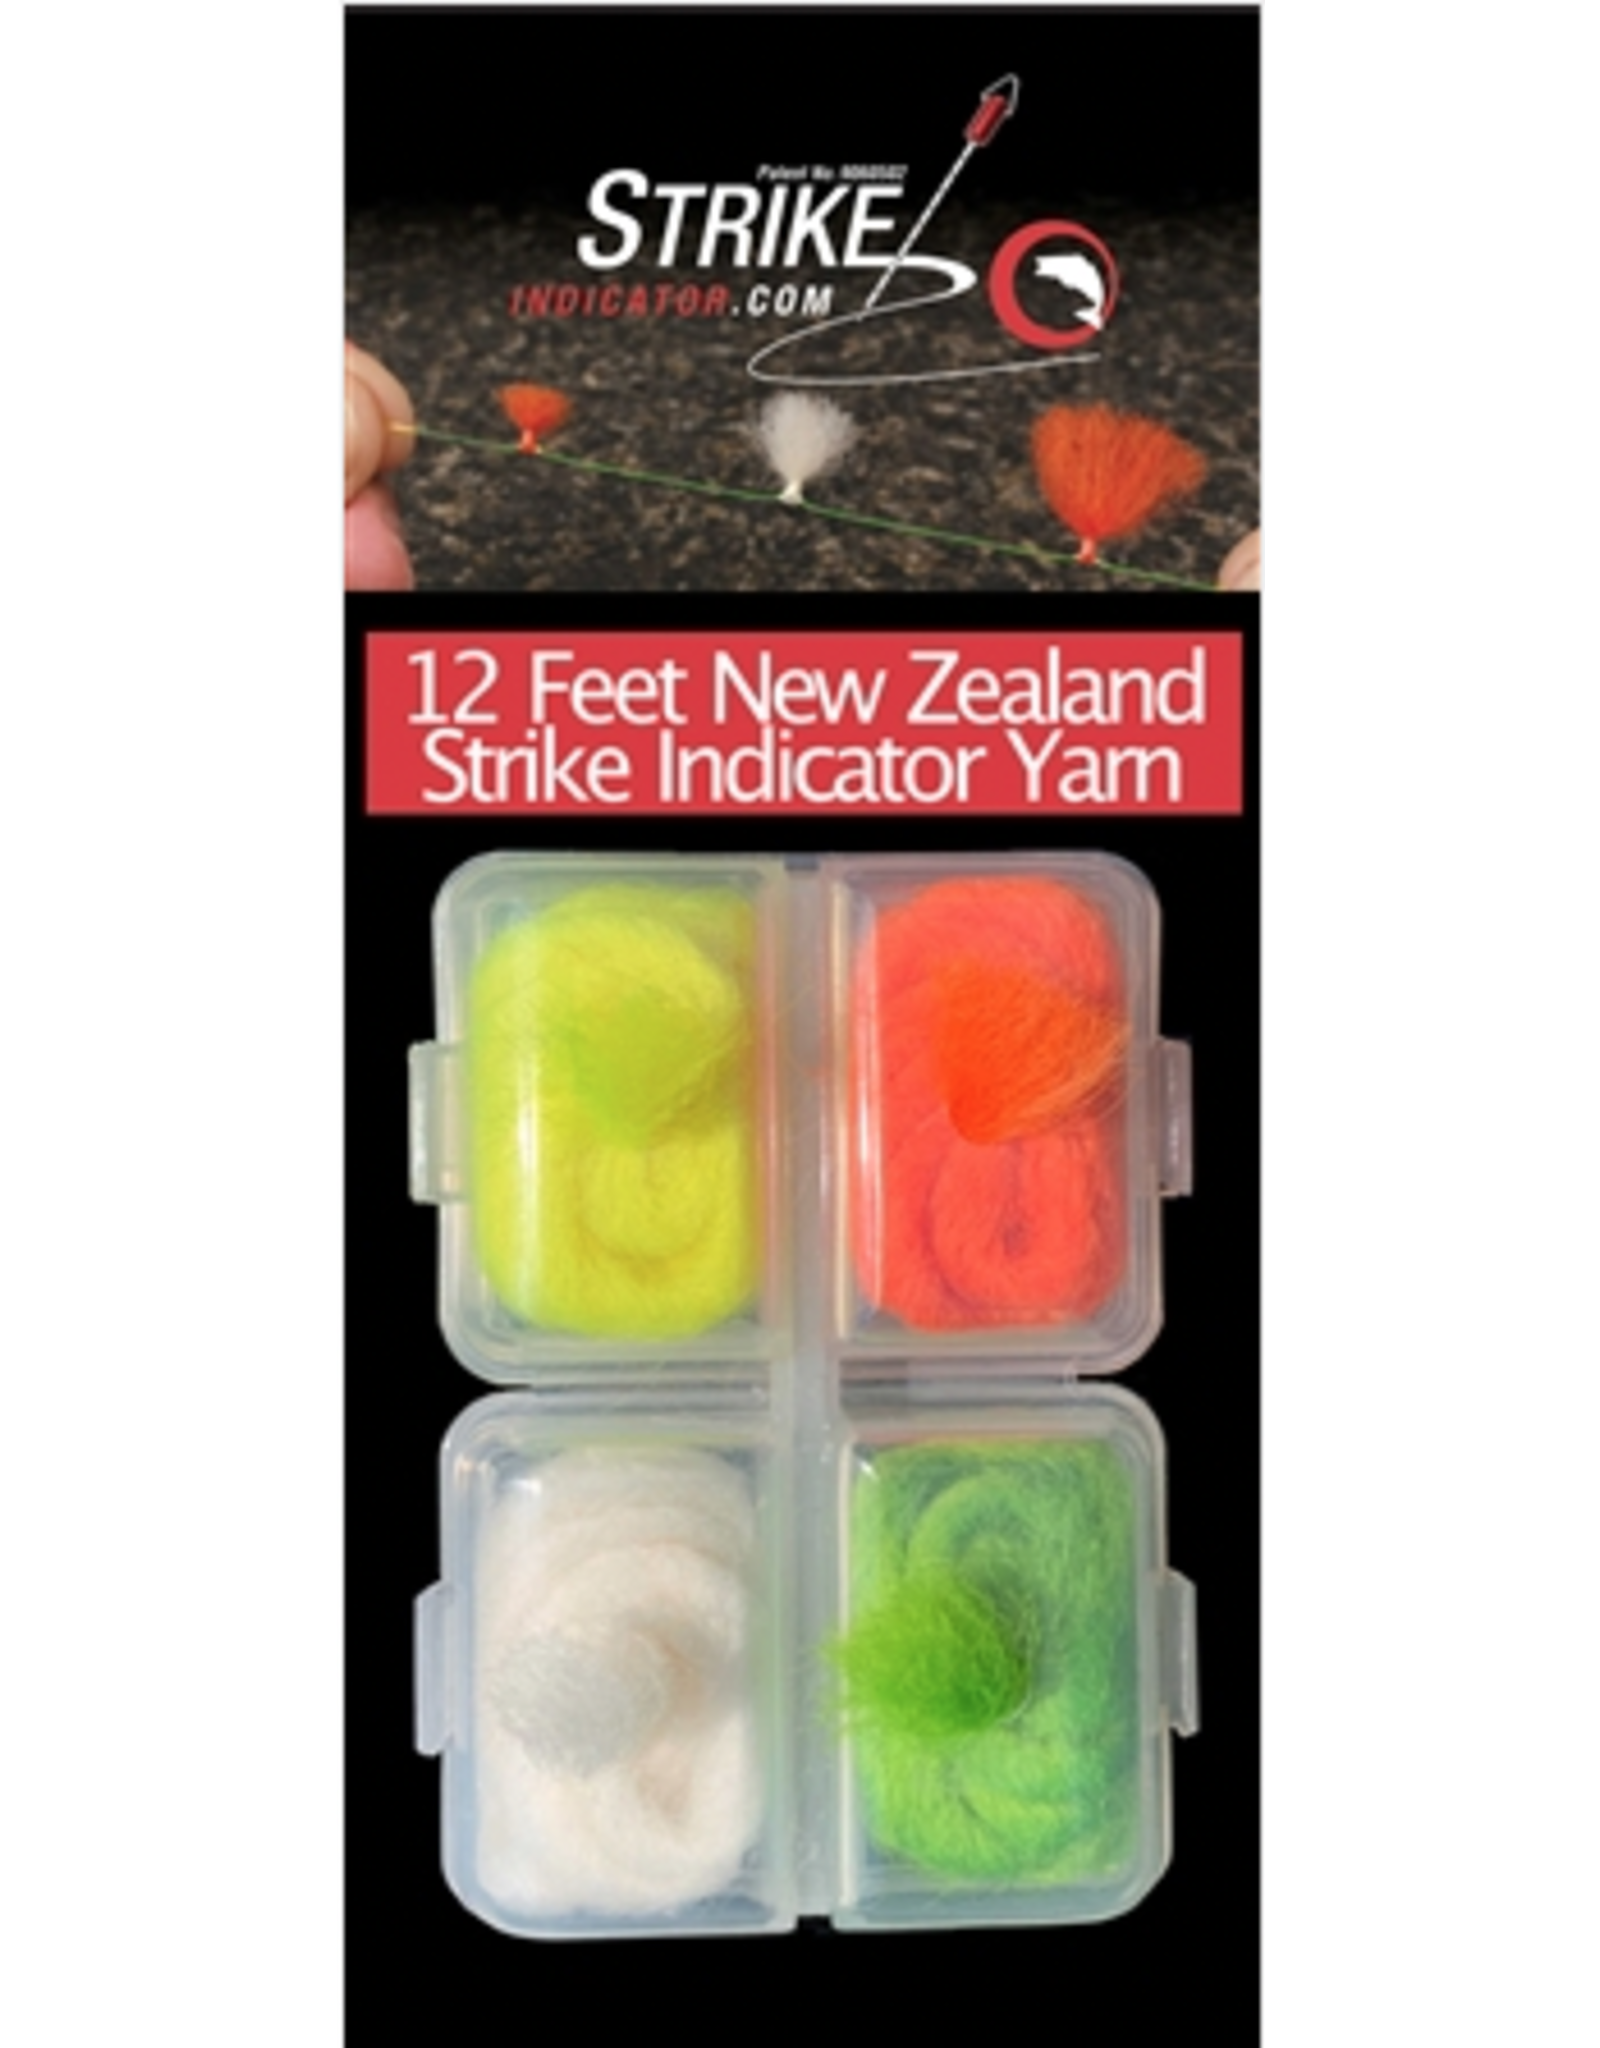 New Zealand Strike Indicator